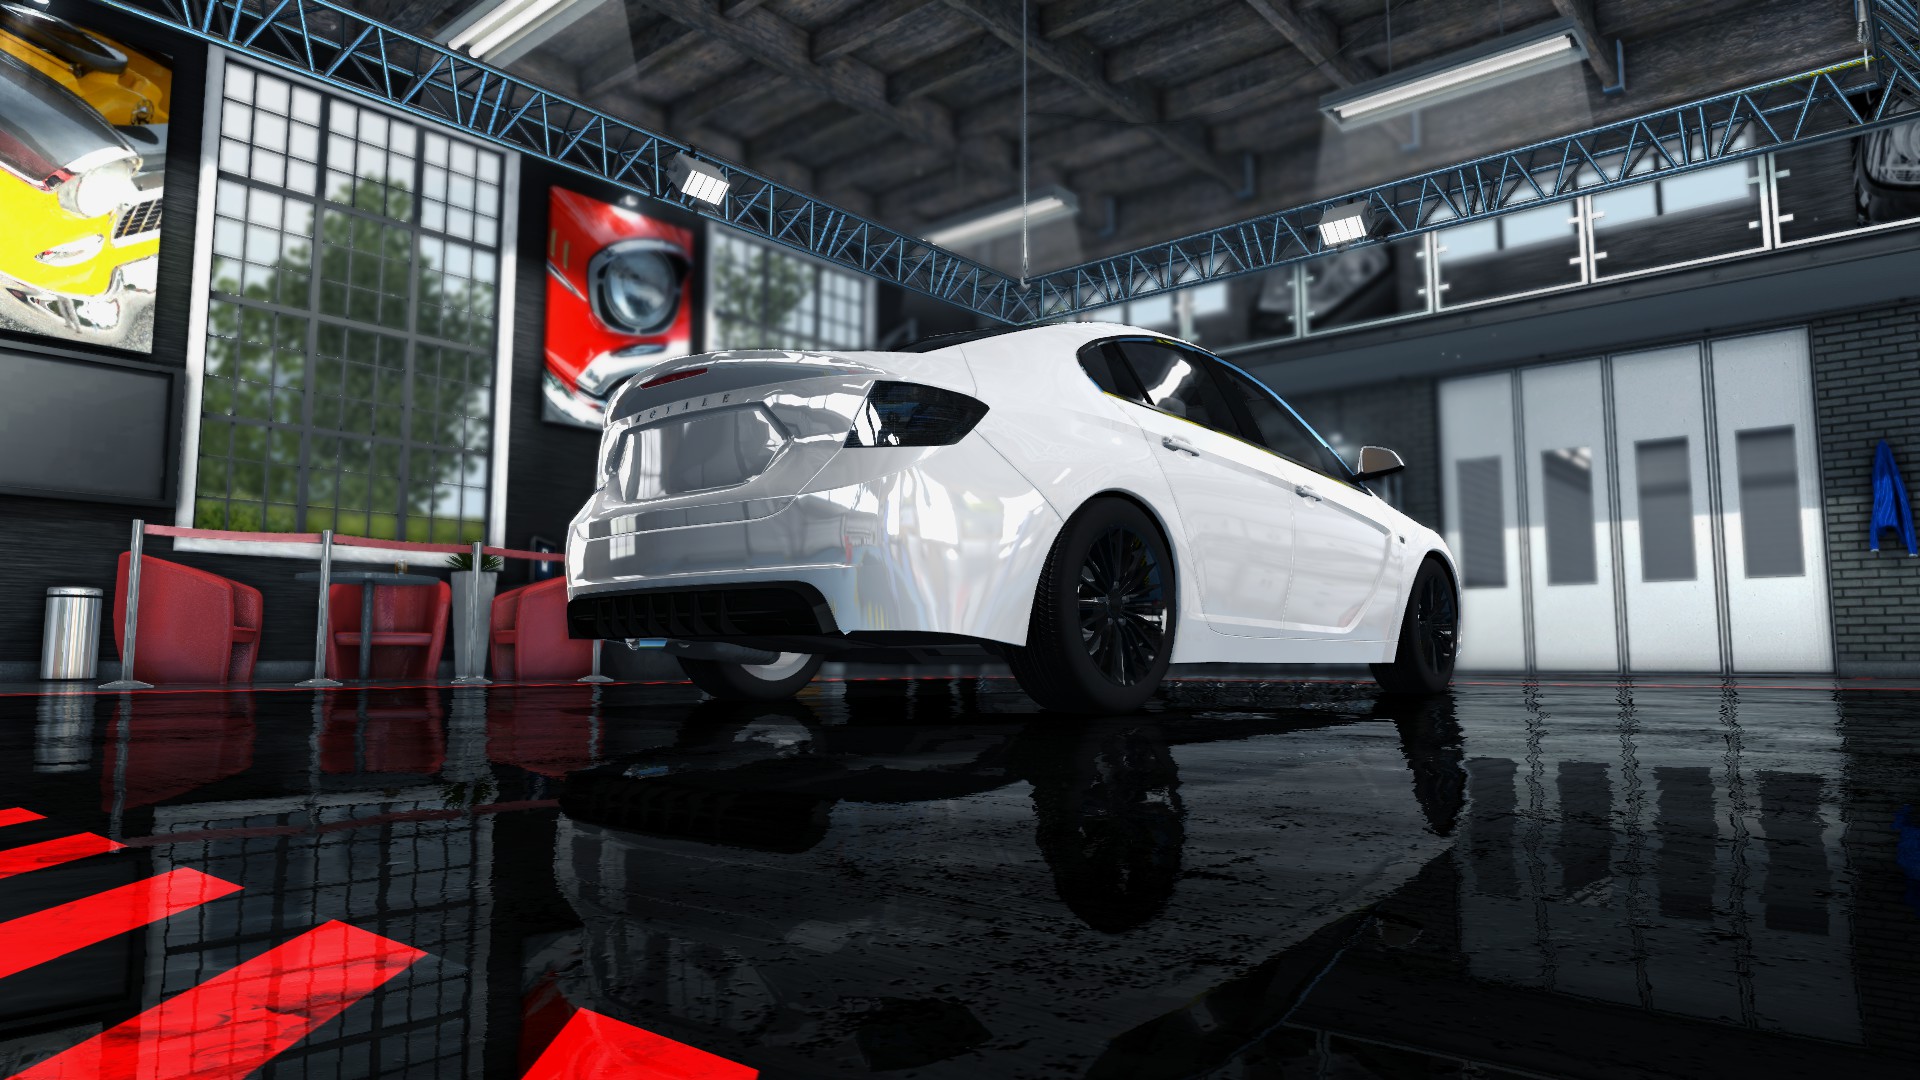 game car mechanic simulator 2015 free download pc